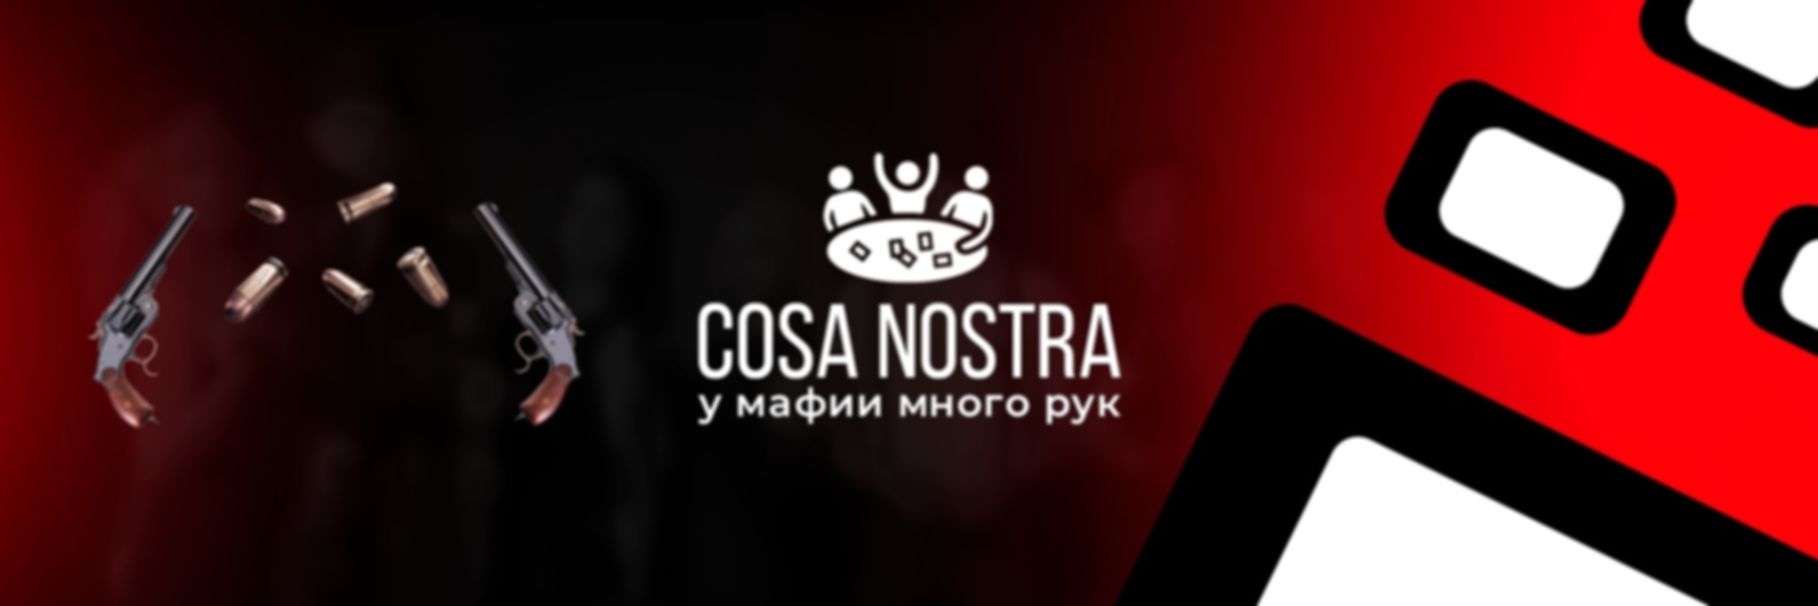 Cosa Nostra - фото